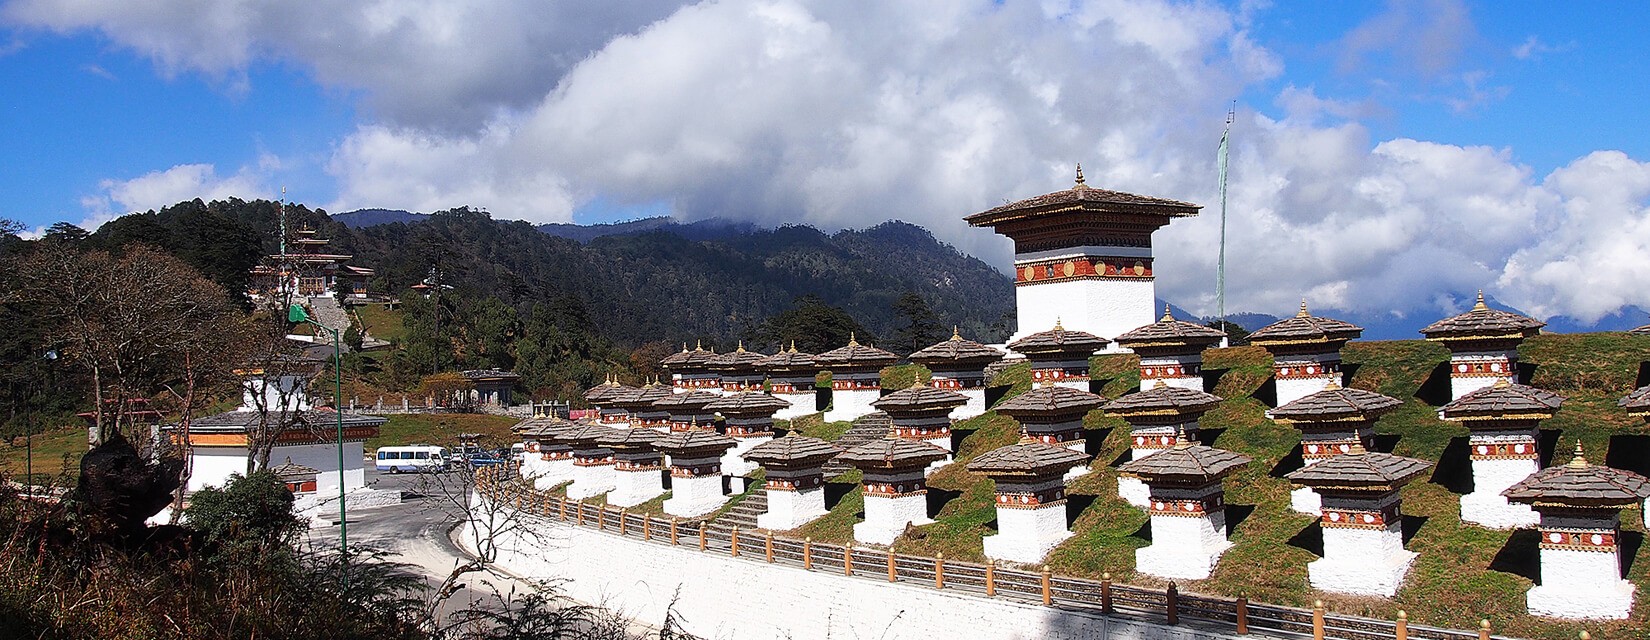 Nepal, Bhutan and Tibet Cultural Tour – 18 days